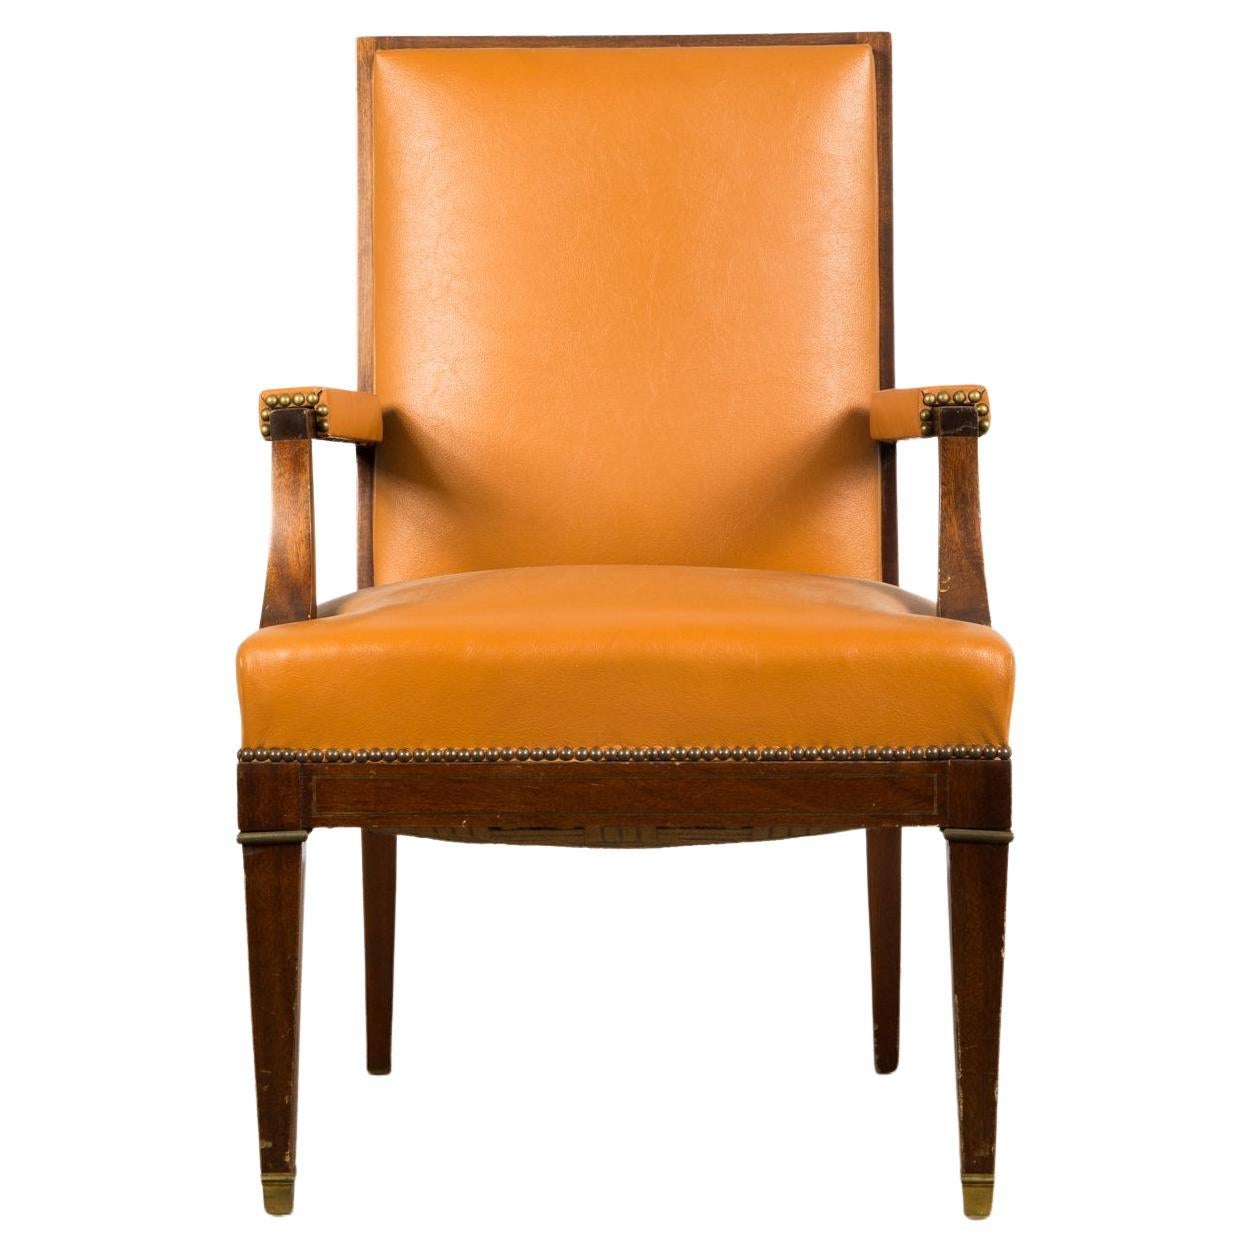 Large Art Déco armchair  / director`s chair by de Coene Frères. Belgium 1930s.